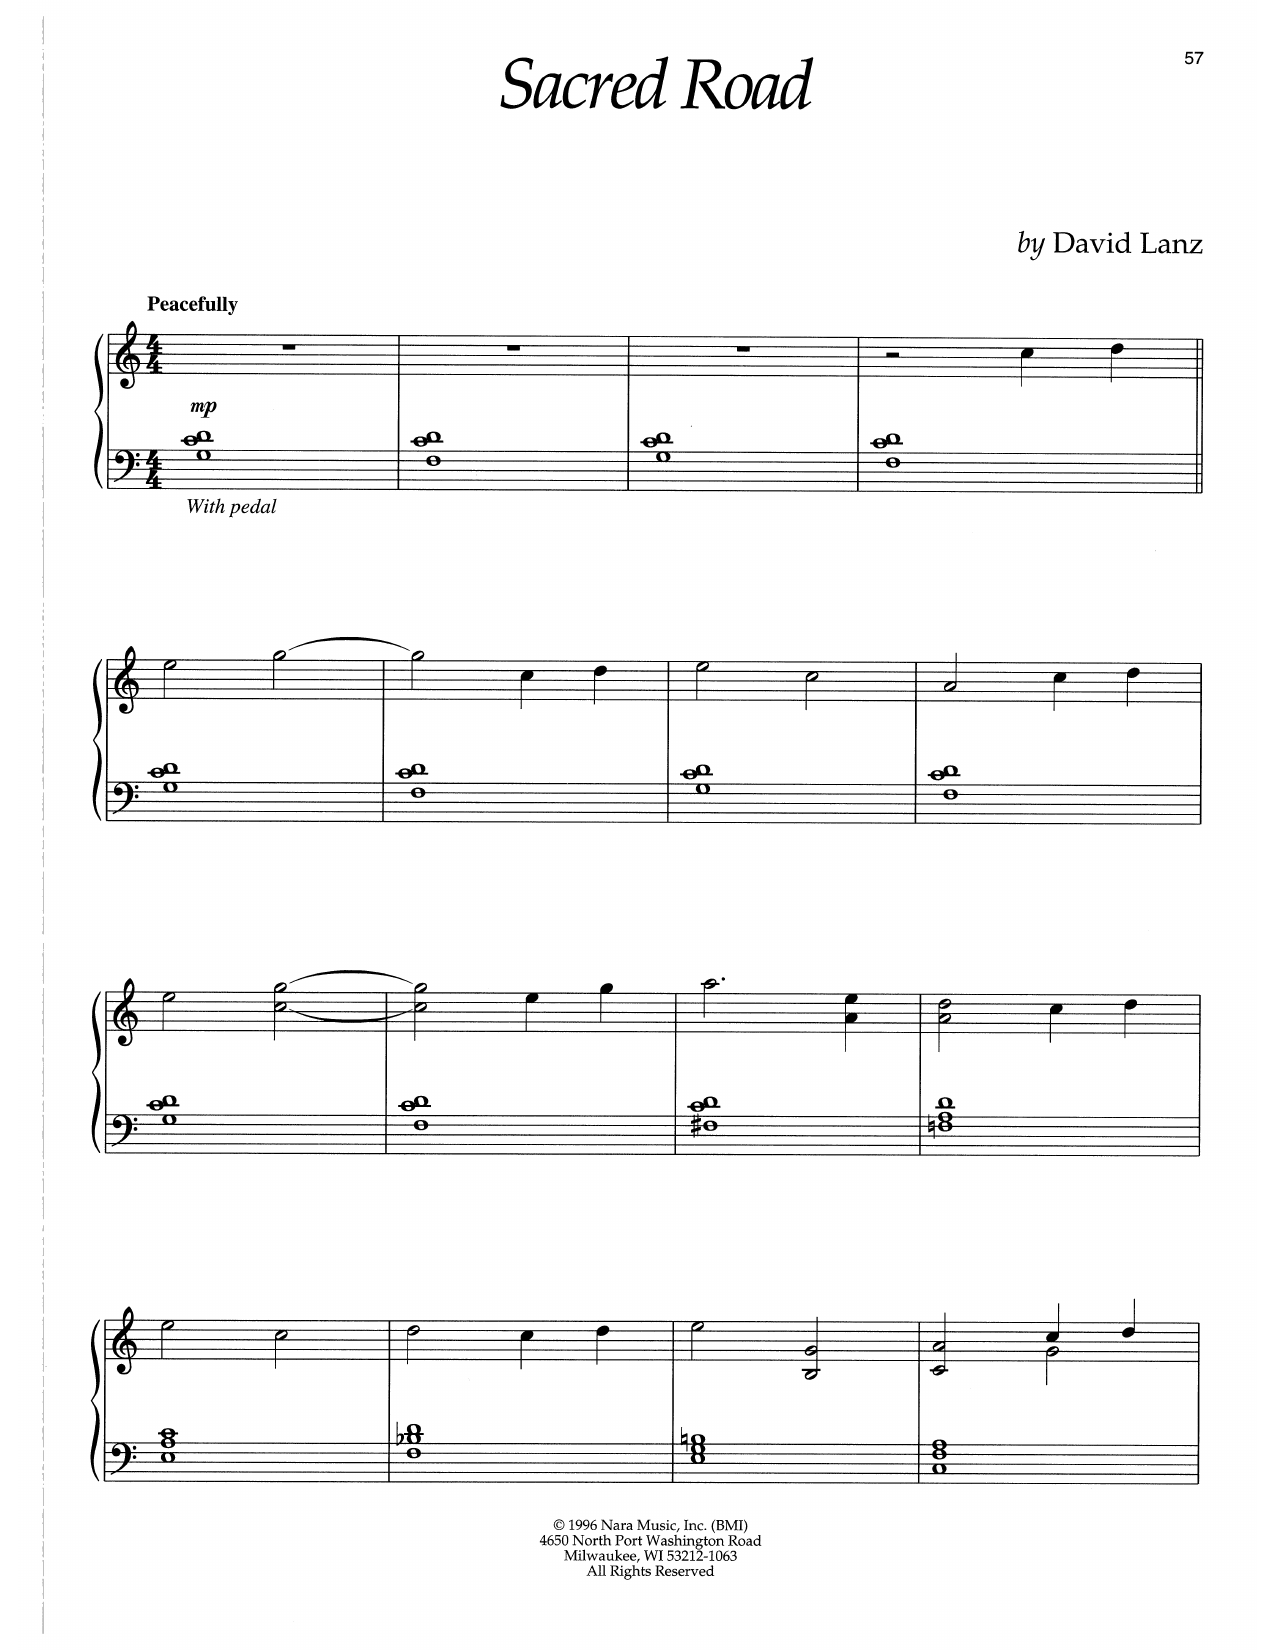 Download David Lanz Sacred Road Sheet Music